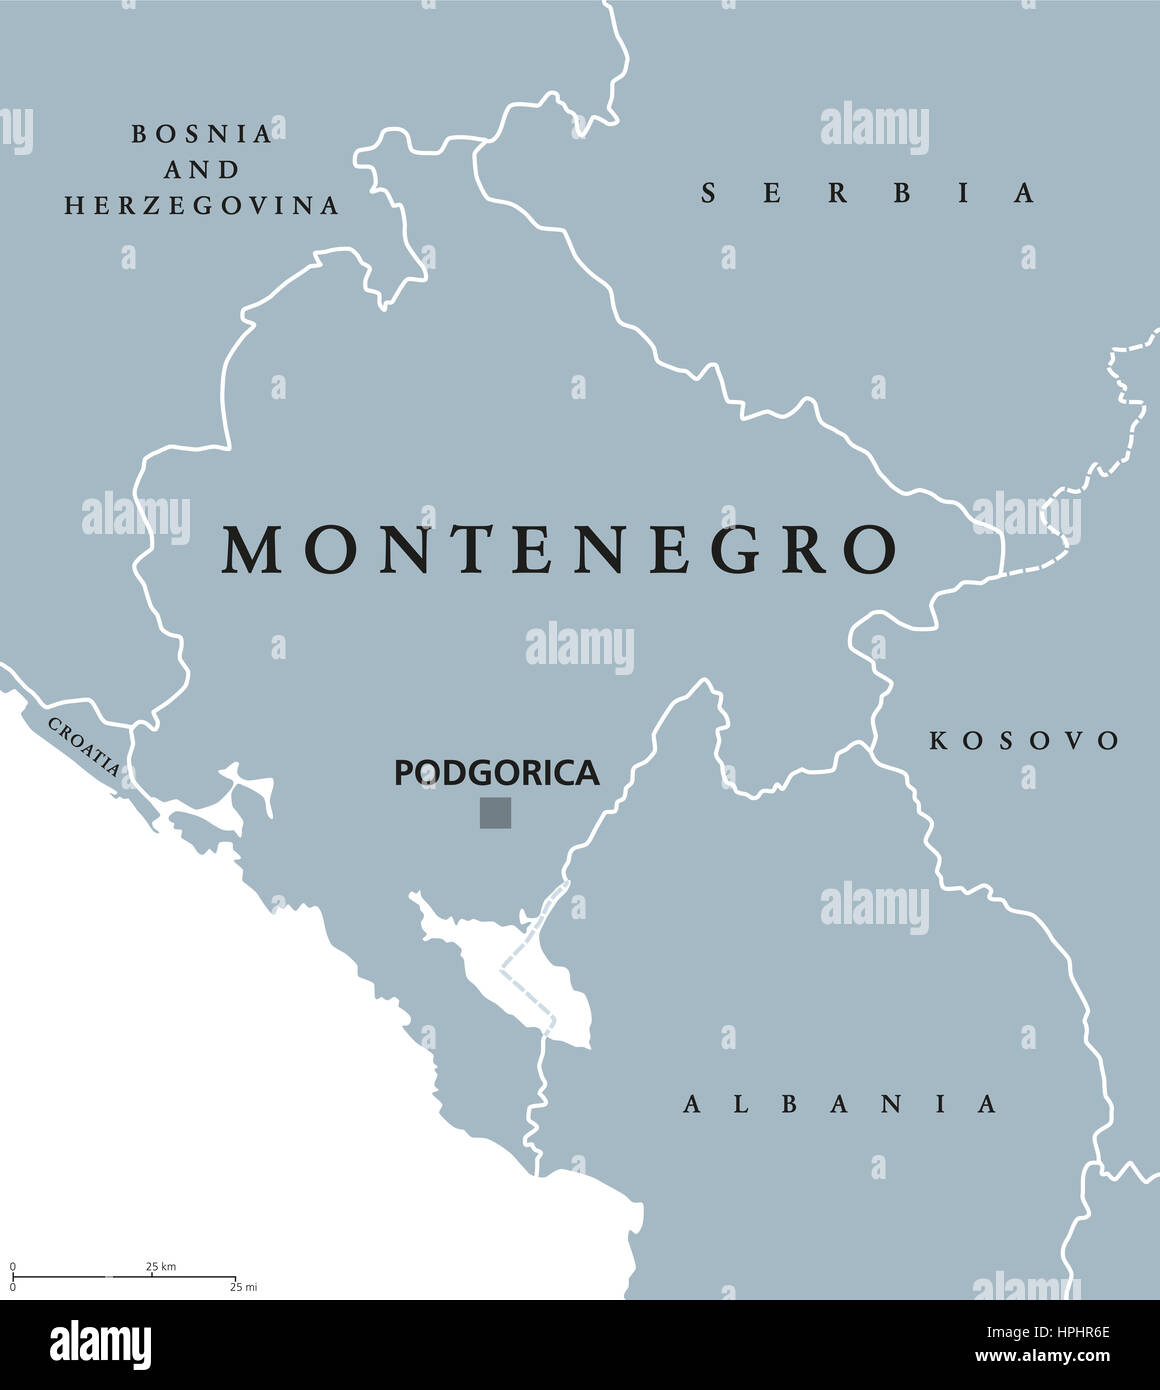 Montenegro mappa politico con capitale Podgorica e paesi vicini. Stato sovrano in Europa sud-orientale sulla penisola balcanica. Foto Stock